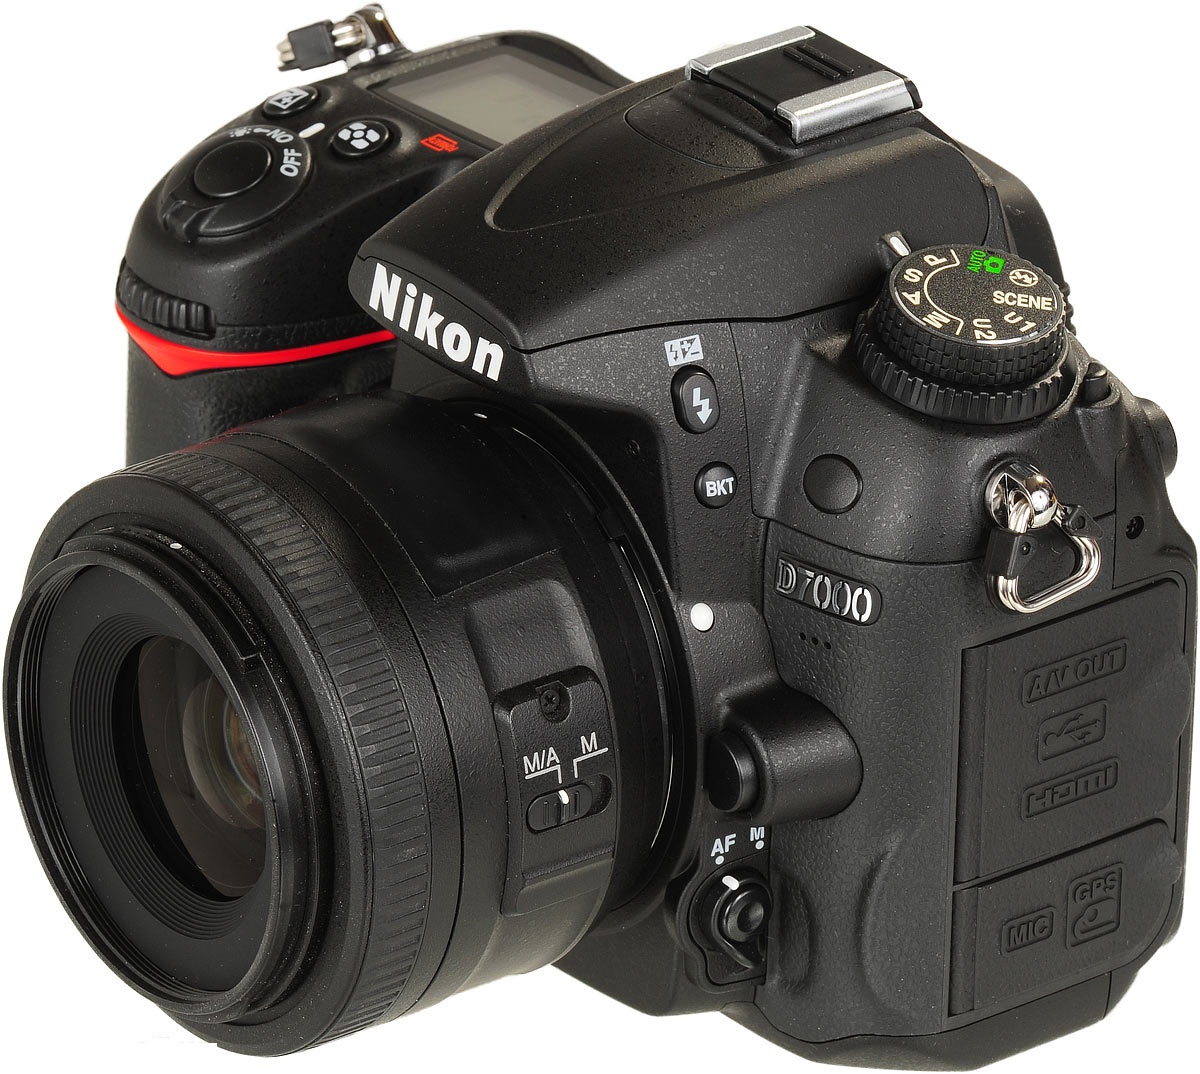 Nikon D7000 DSLR Camera Kit with Nikon 18-105mm DX VR Lens large image 0